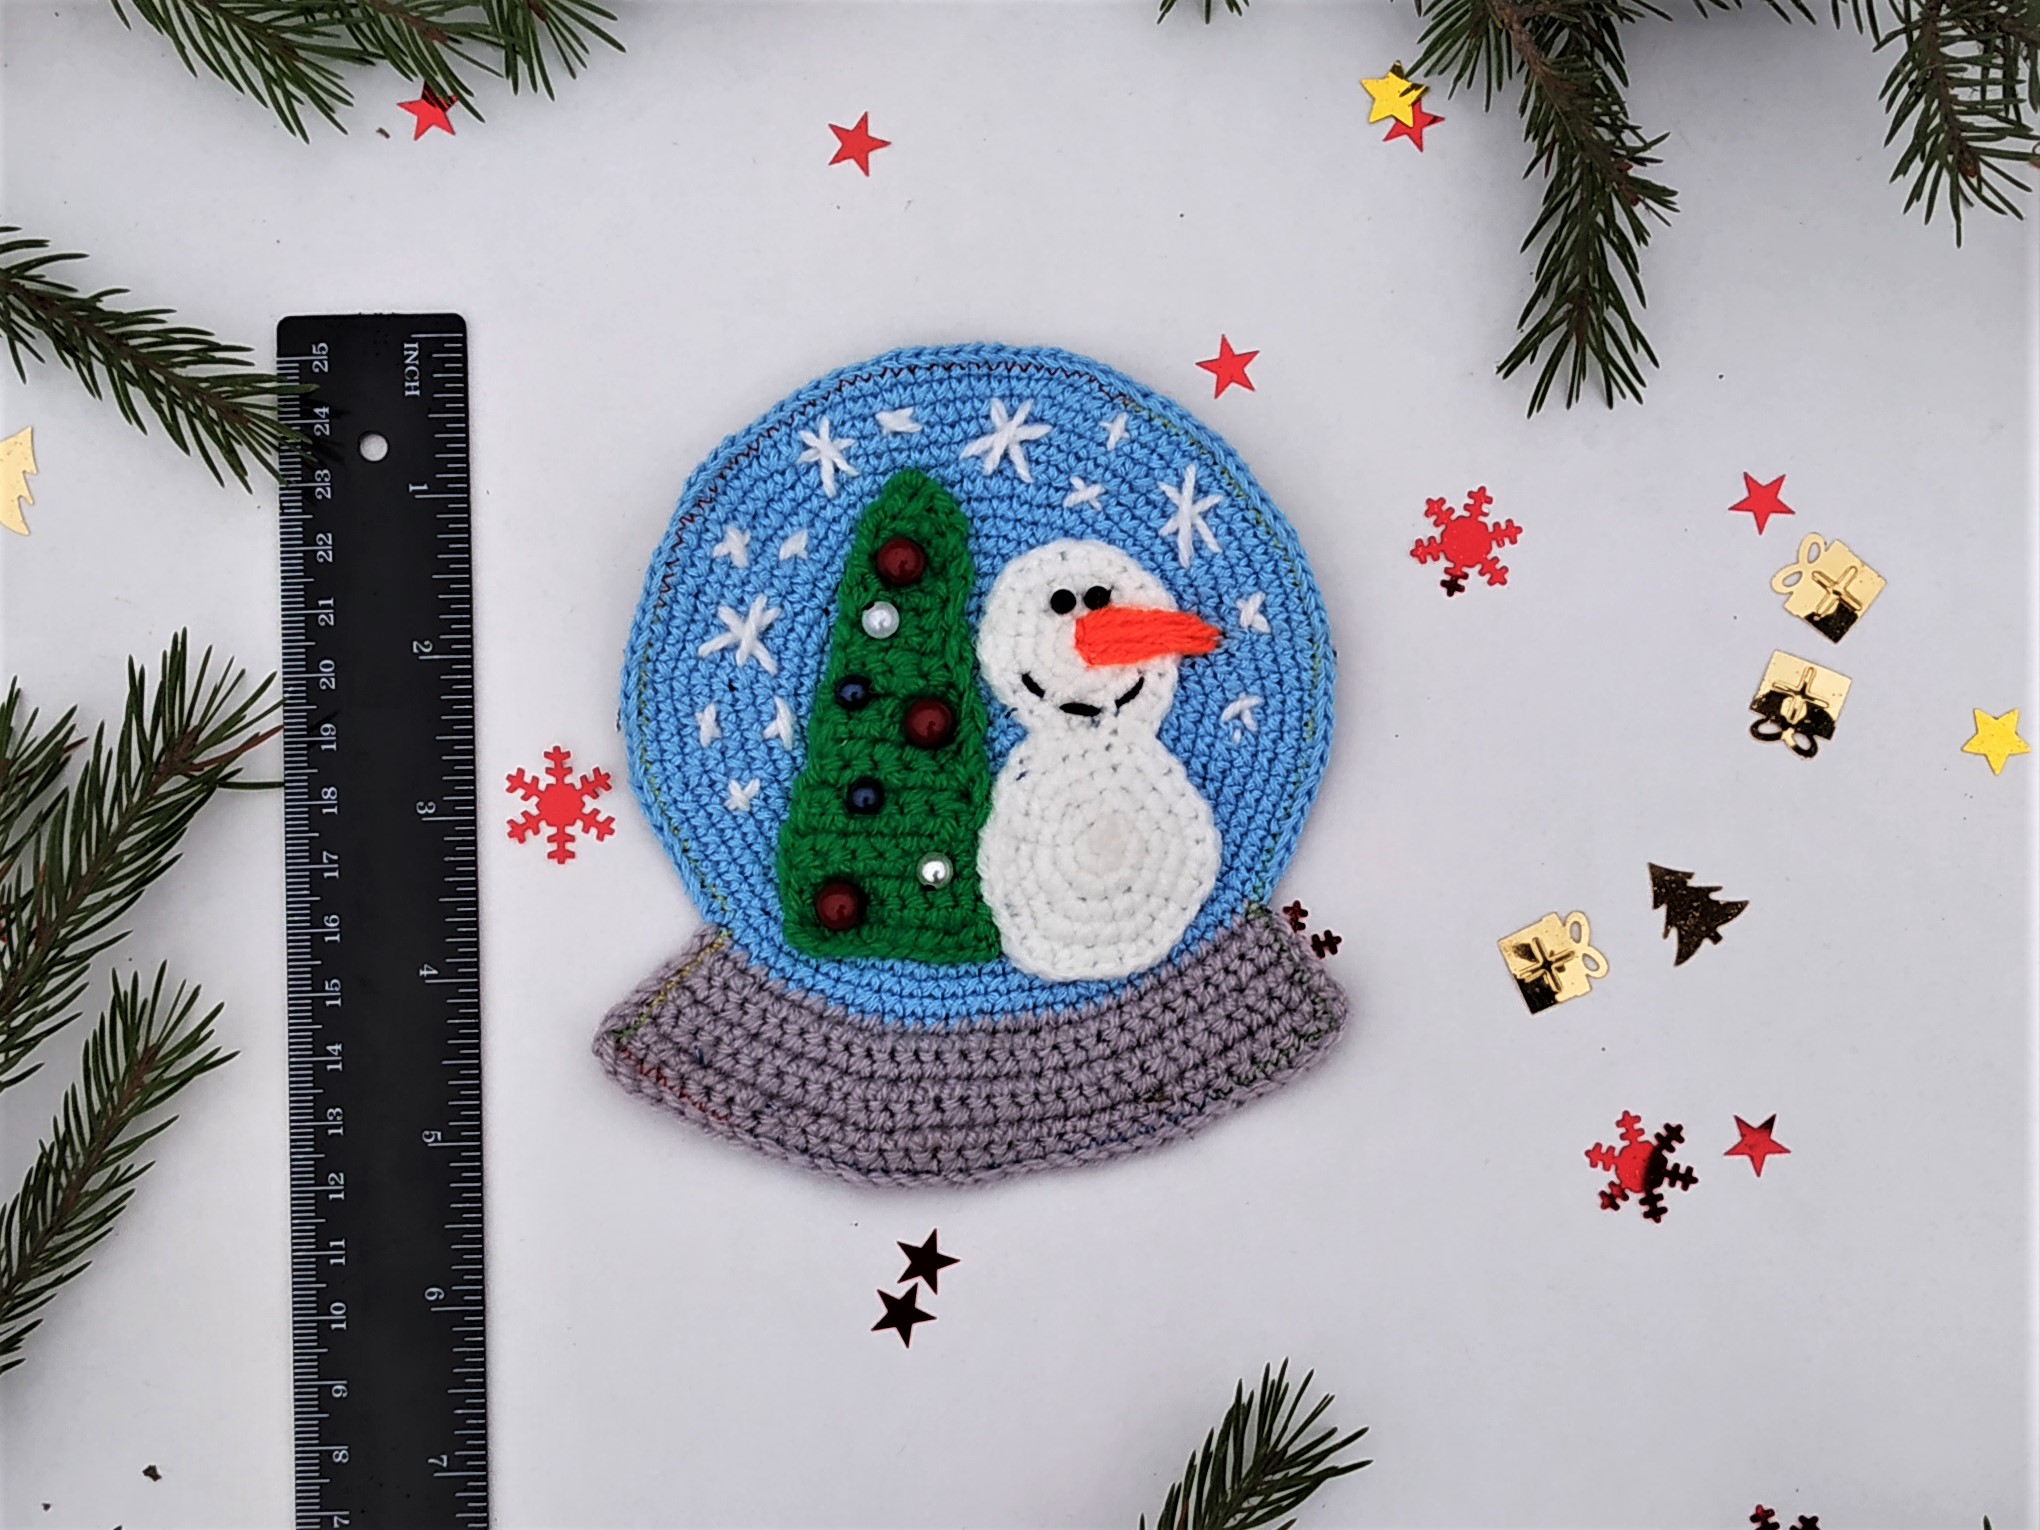 Snowglobe applique crochet pattern, Crochet snowglobe pattern, Snowglobe crochet pattern